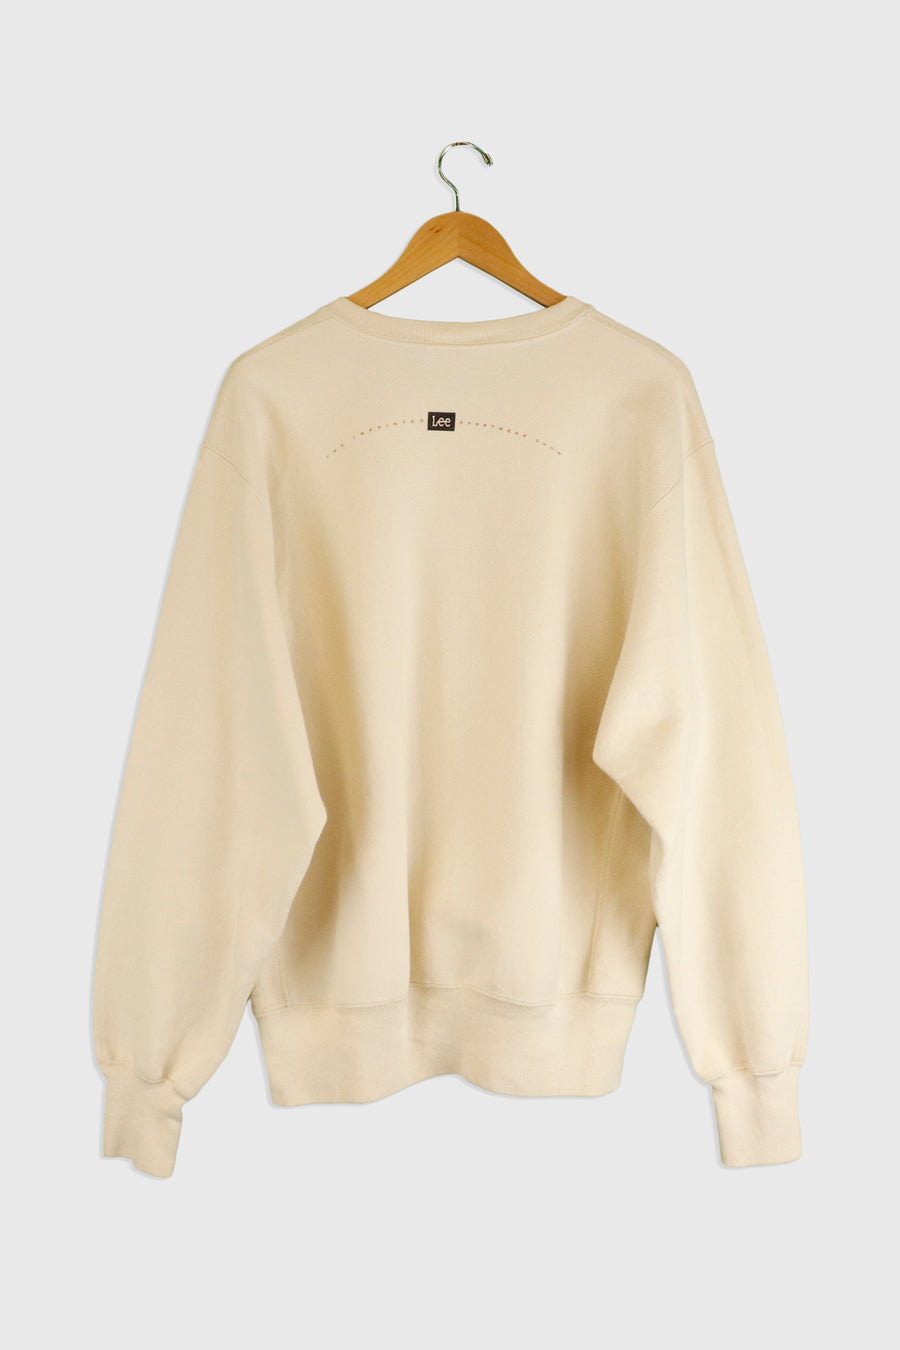 Vintage Lee Branded Sweatshirt Sz L